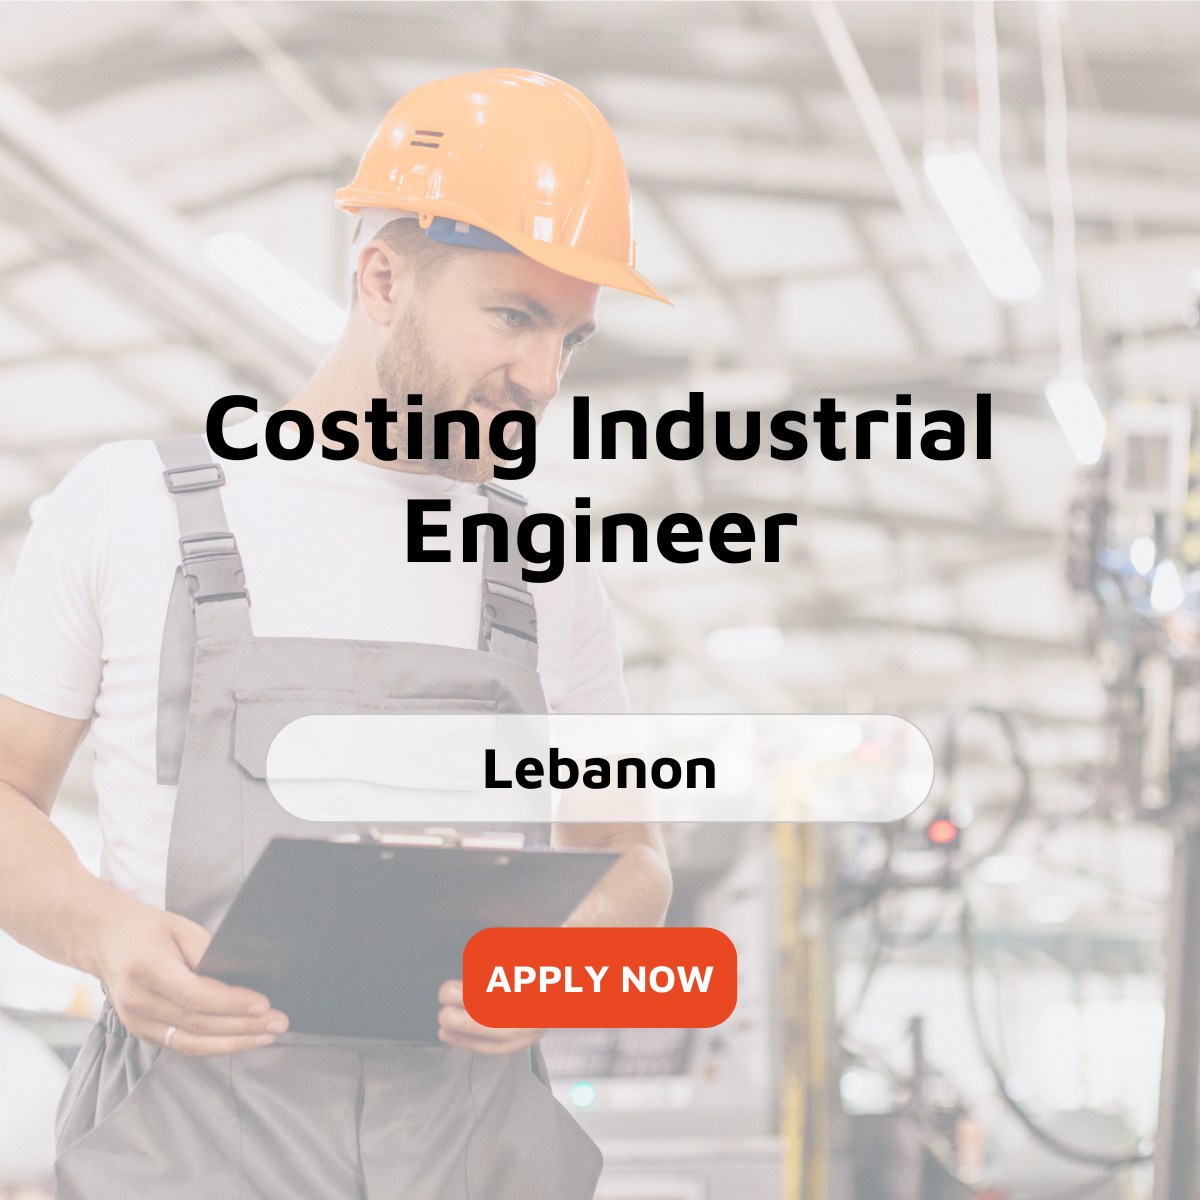 Costing Industrial Engineer